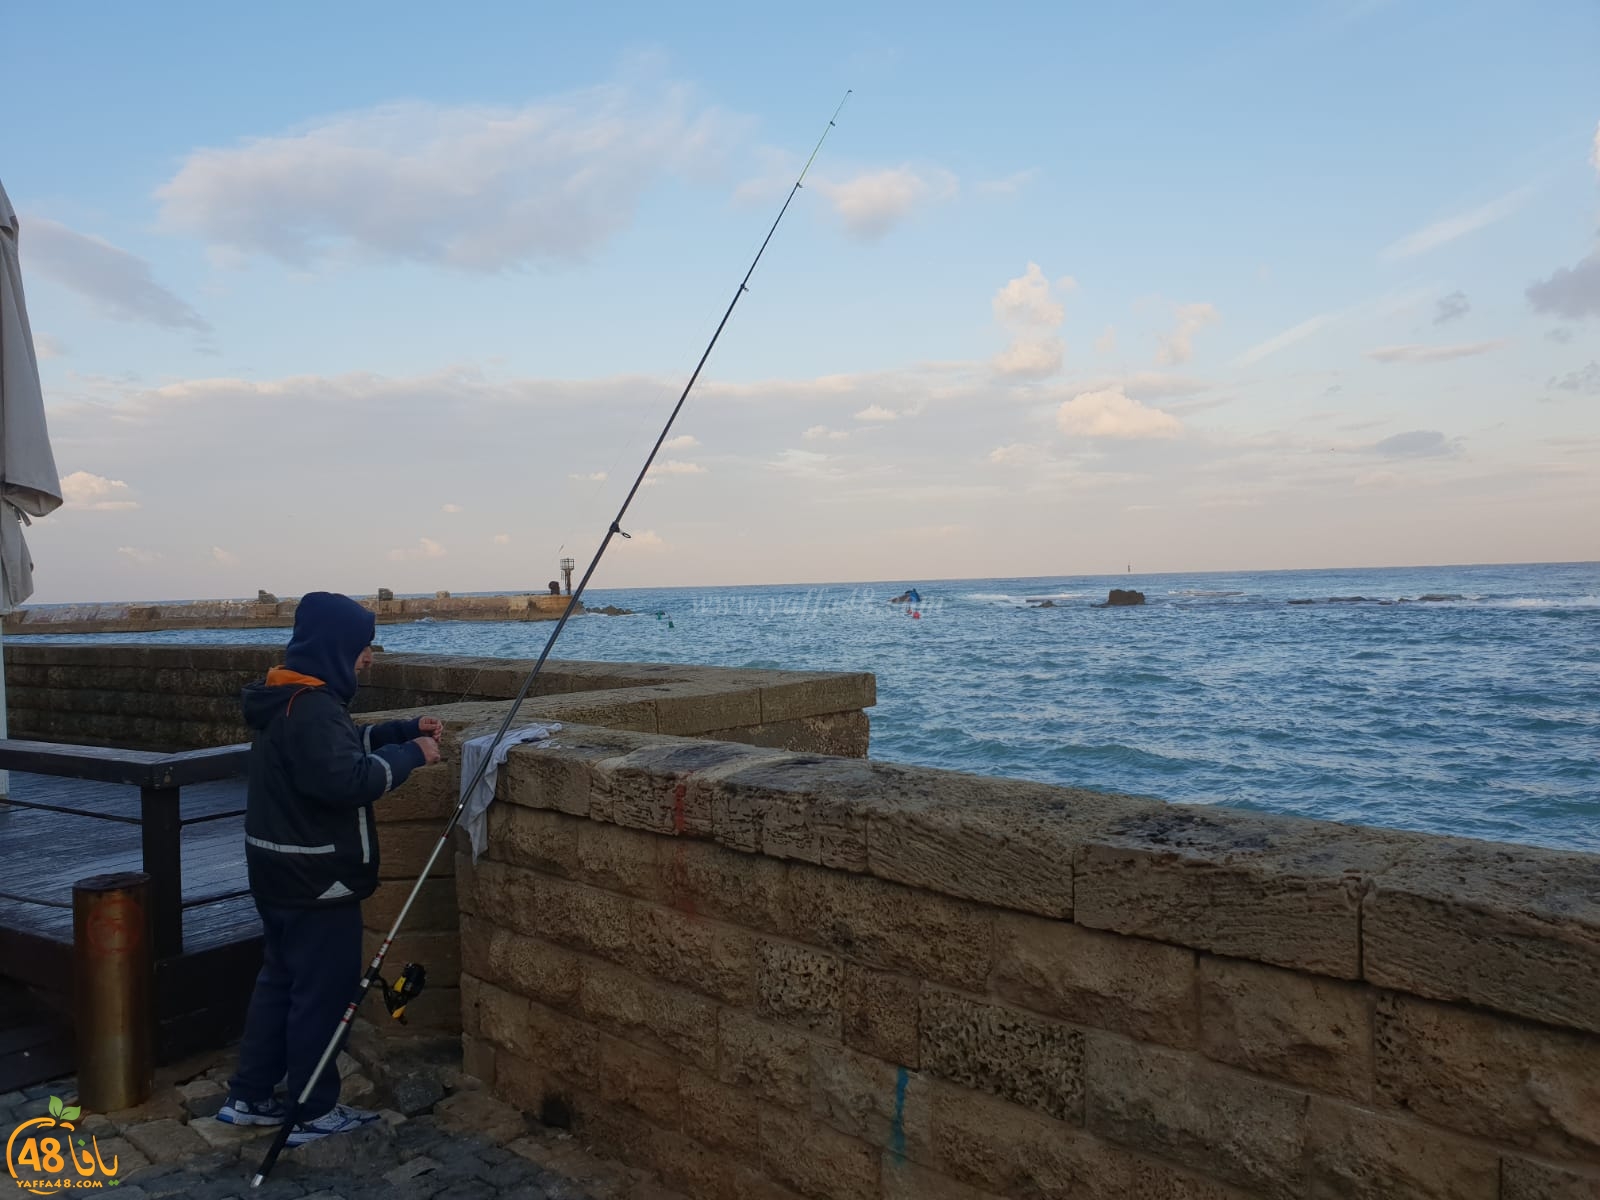 شاهد : انقلاب مركب صيد على مدخل ميناء يافا وانتشال 3 صيادين